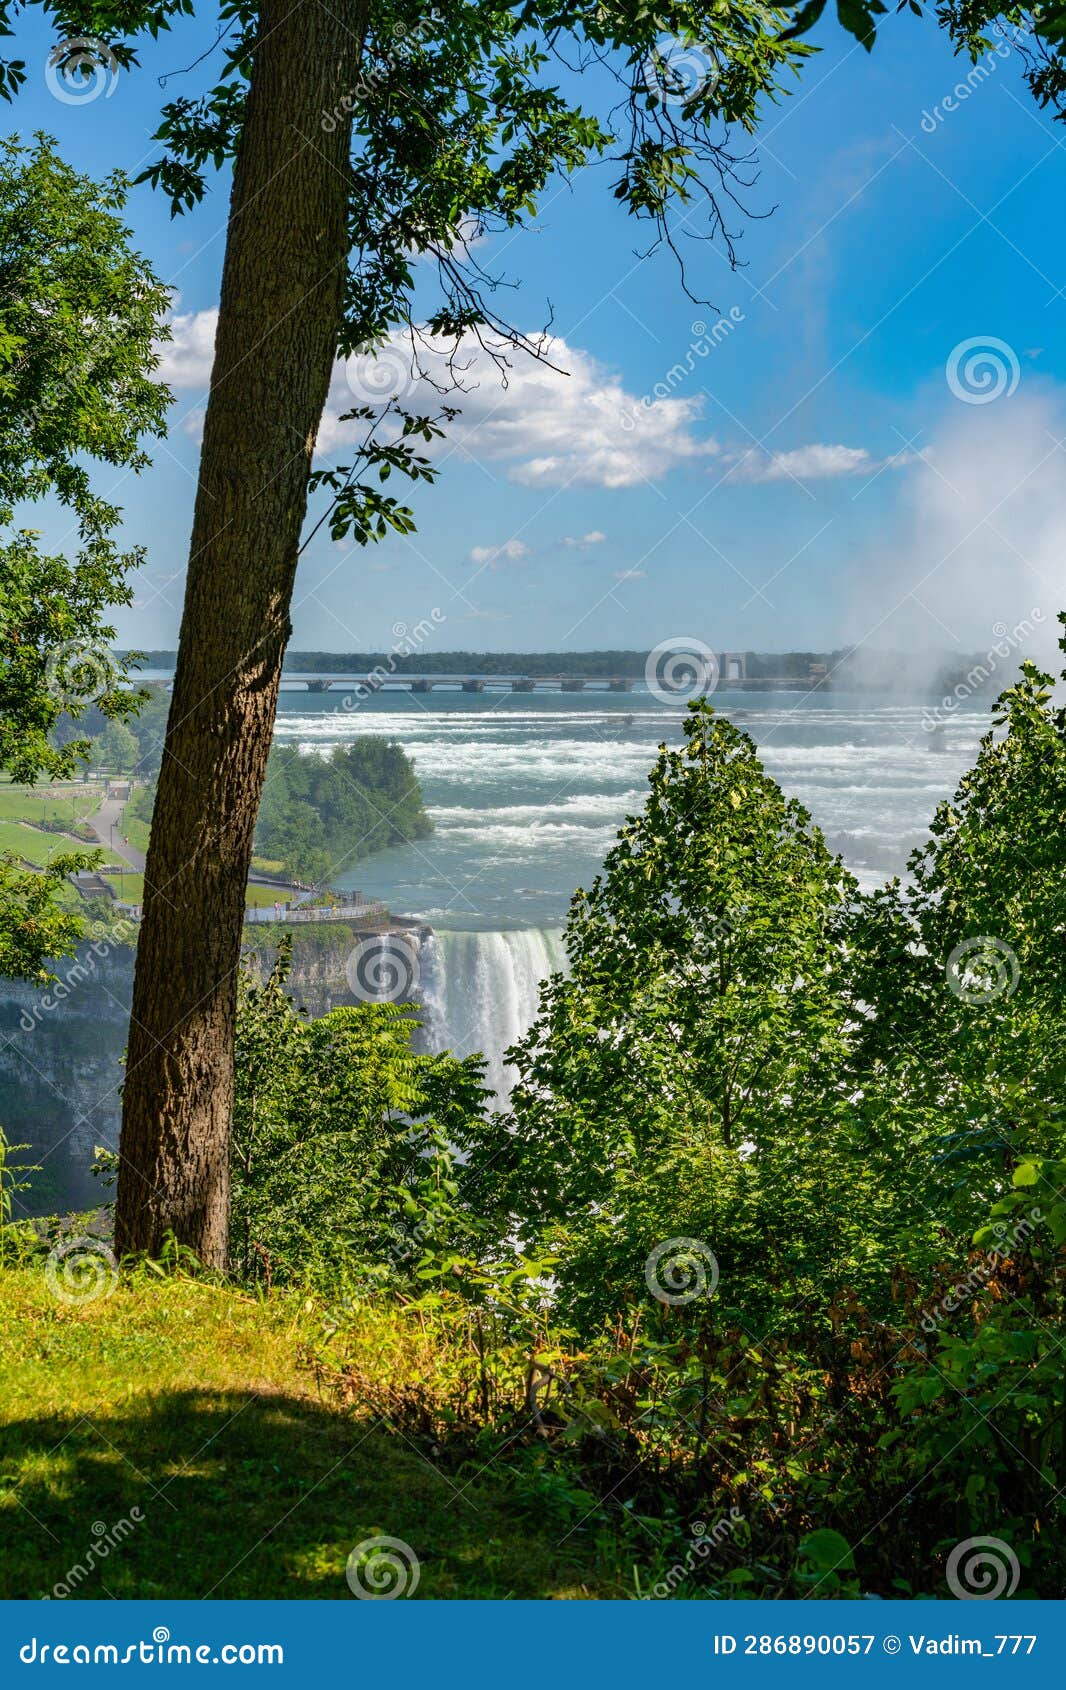 Niagara Falls, Queen Victoria Park, View of Niagara Falls through the ...